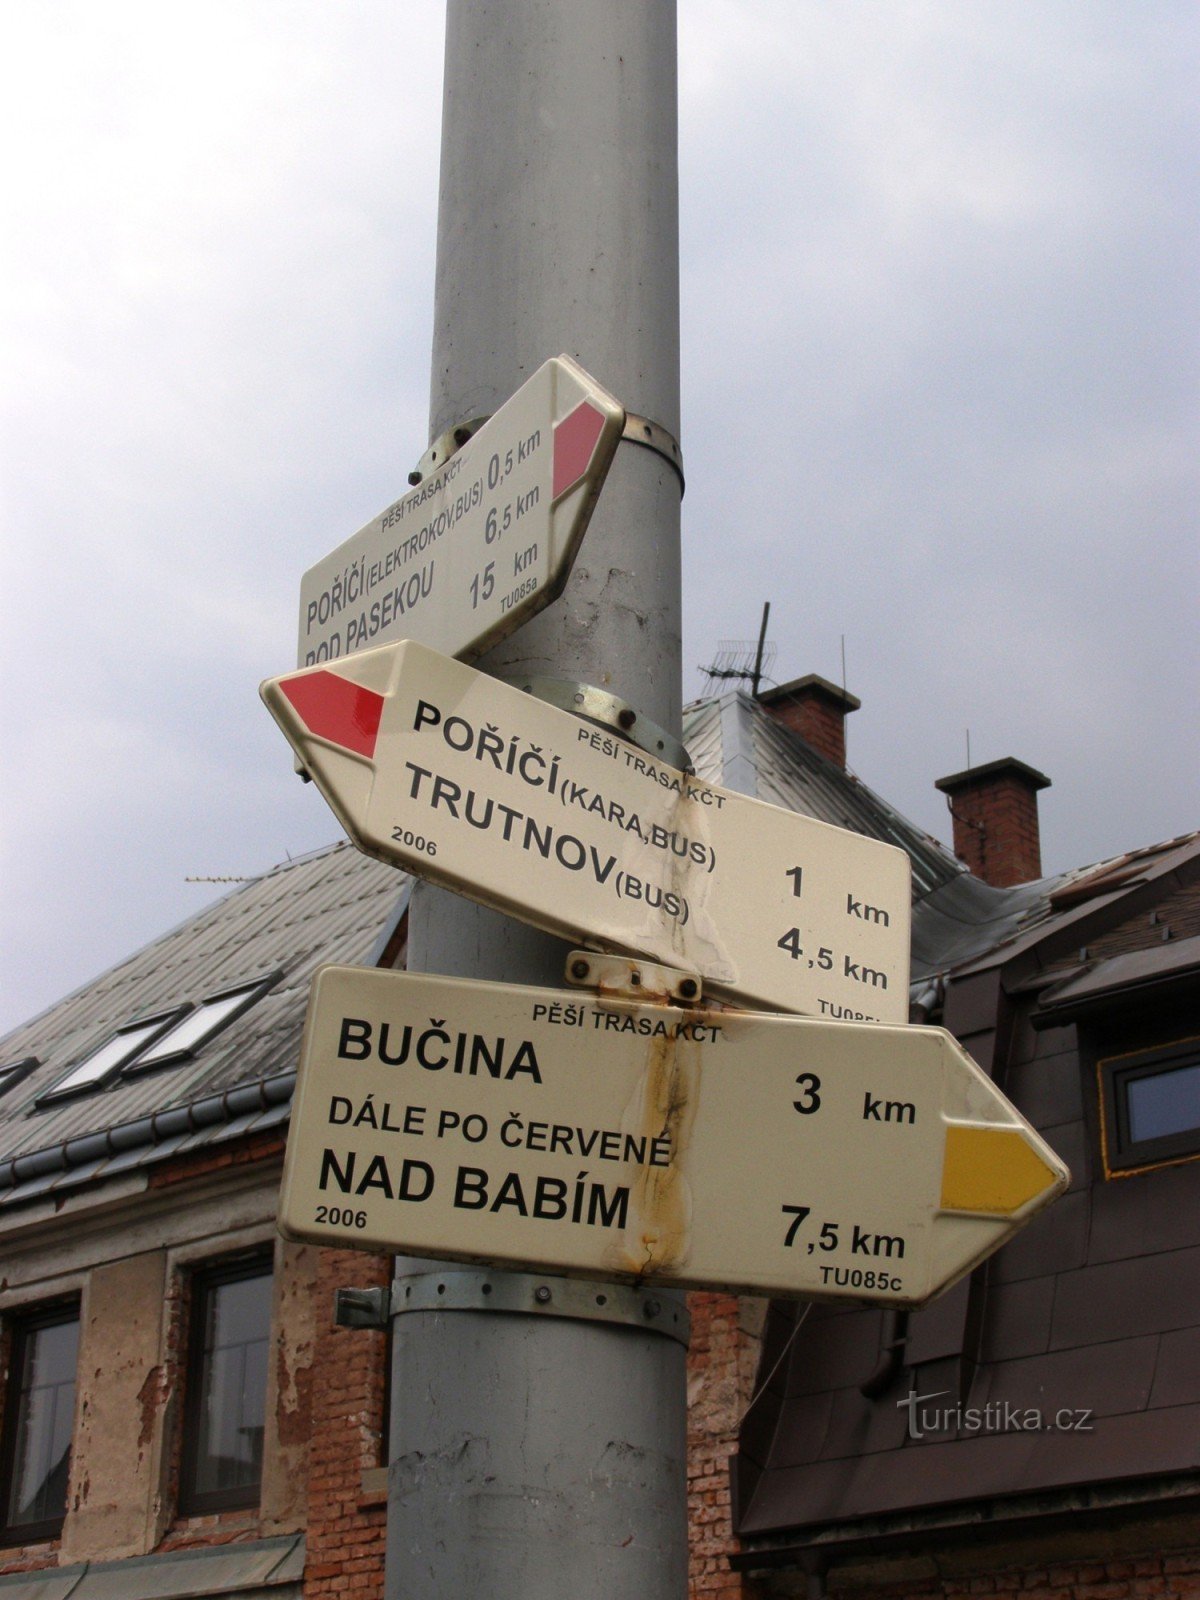 τουριστικό σταυροδρόμι Trutnov, Poříčí - κοντά στην παιδική χαρά